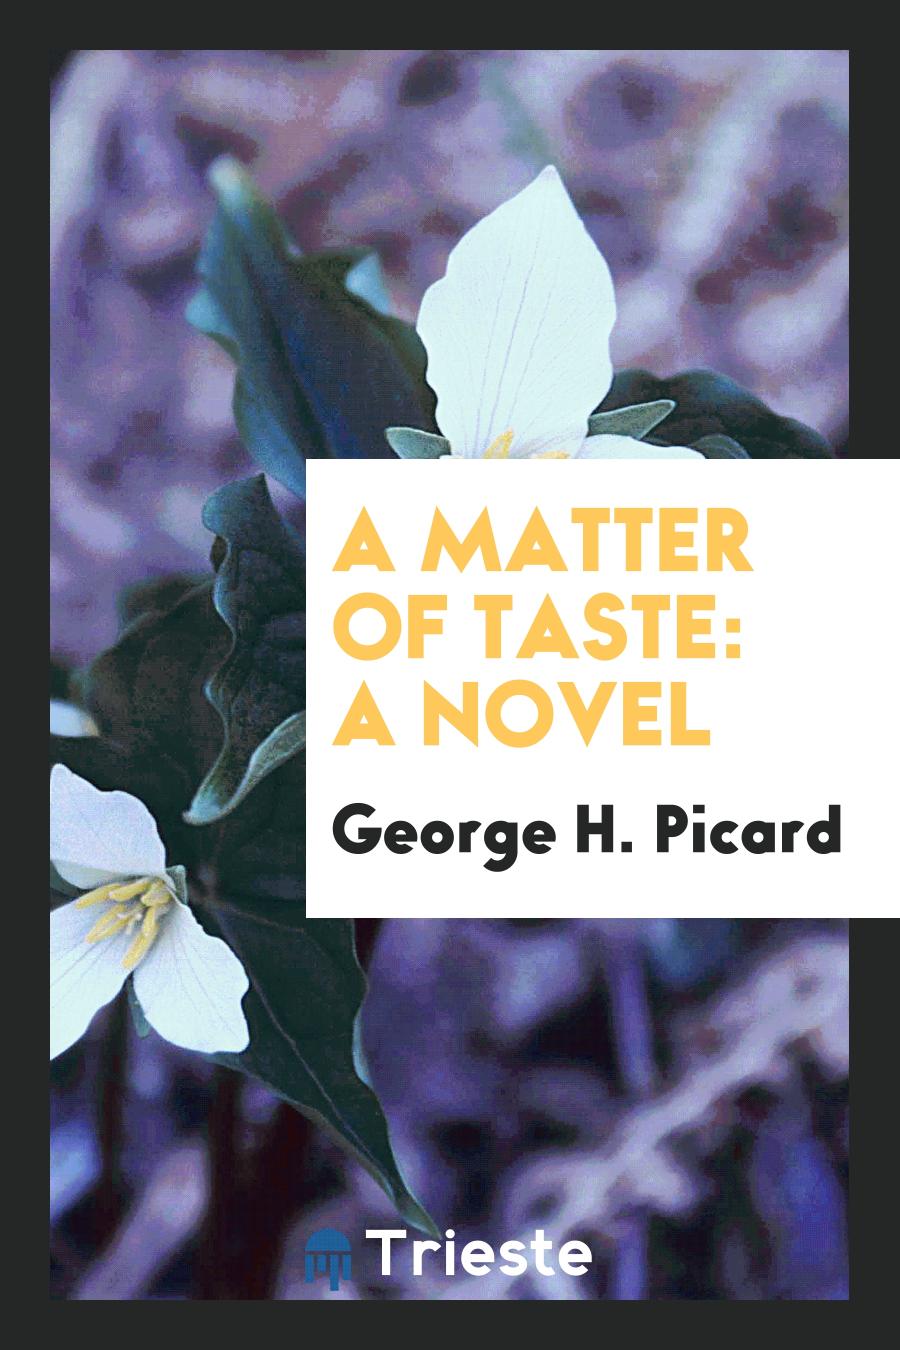 A Matter of Taste: A Novel